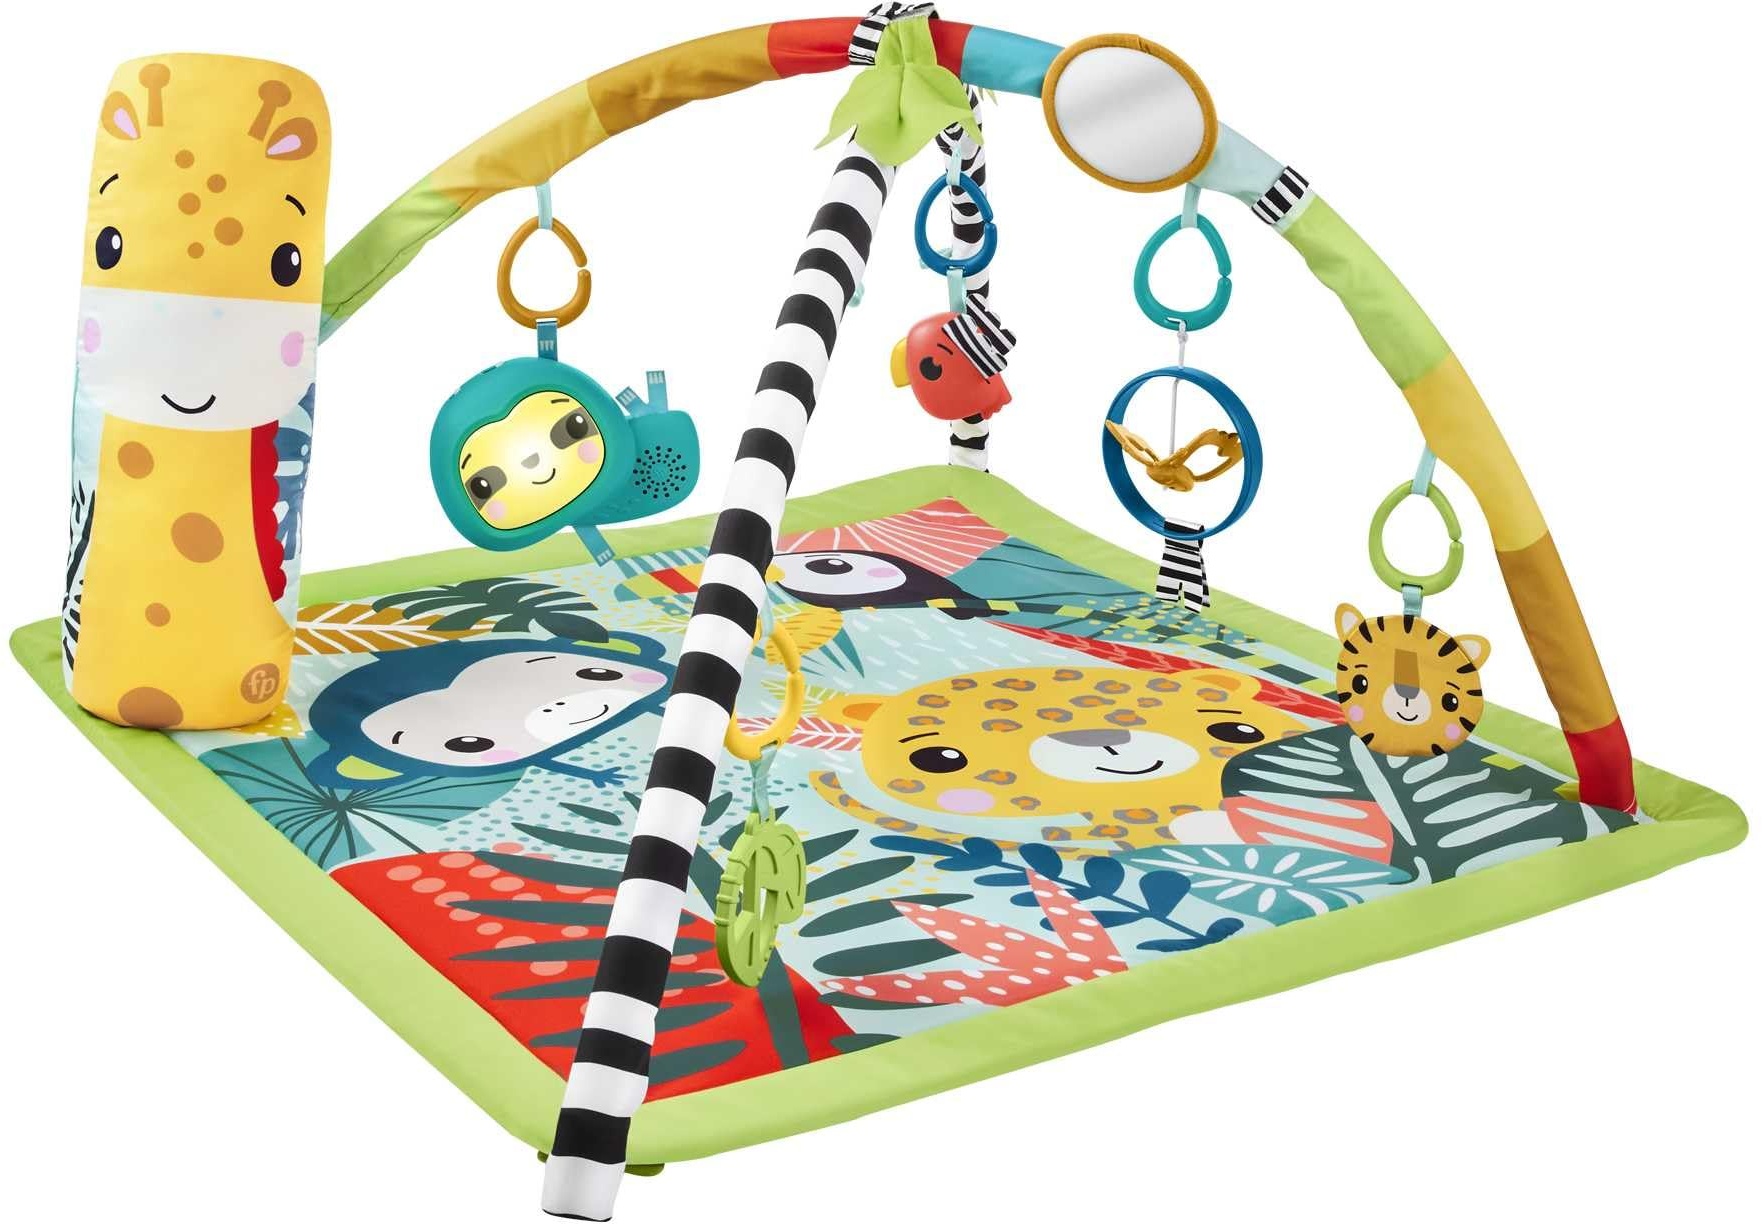 Fisher-Price 3-in-1 Rainforest Spieldecke für Babys, Spielmatte und sensorische Spielzeuge für das Spielen in der Bauchlage, Regenwalddesign, ab der Geburt, HJW08